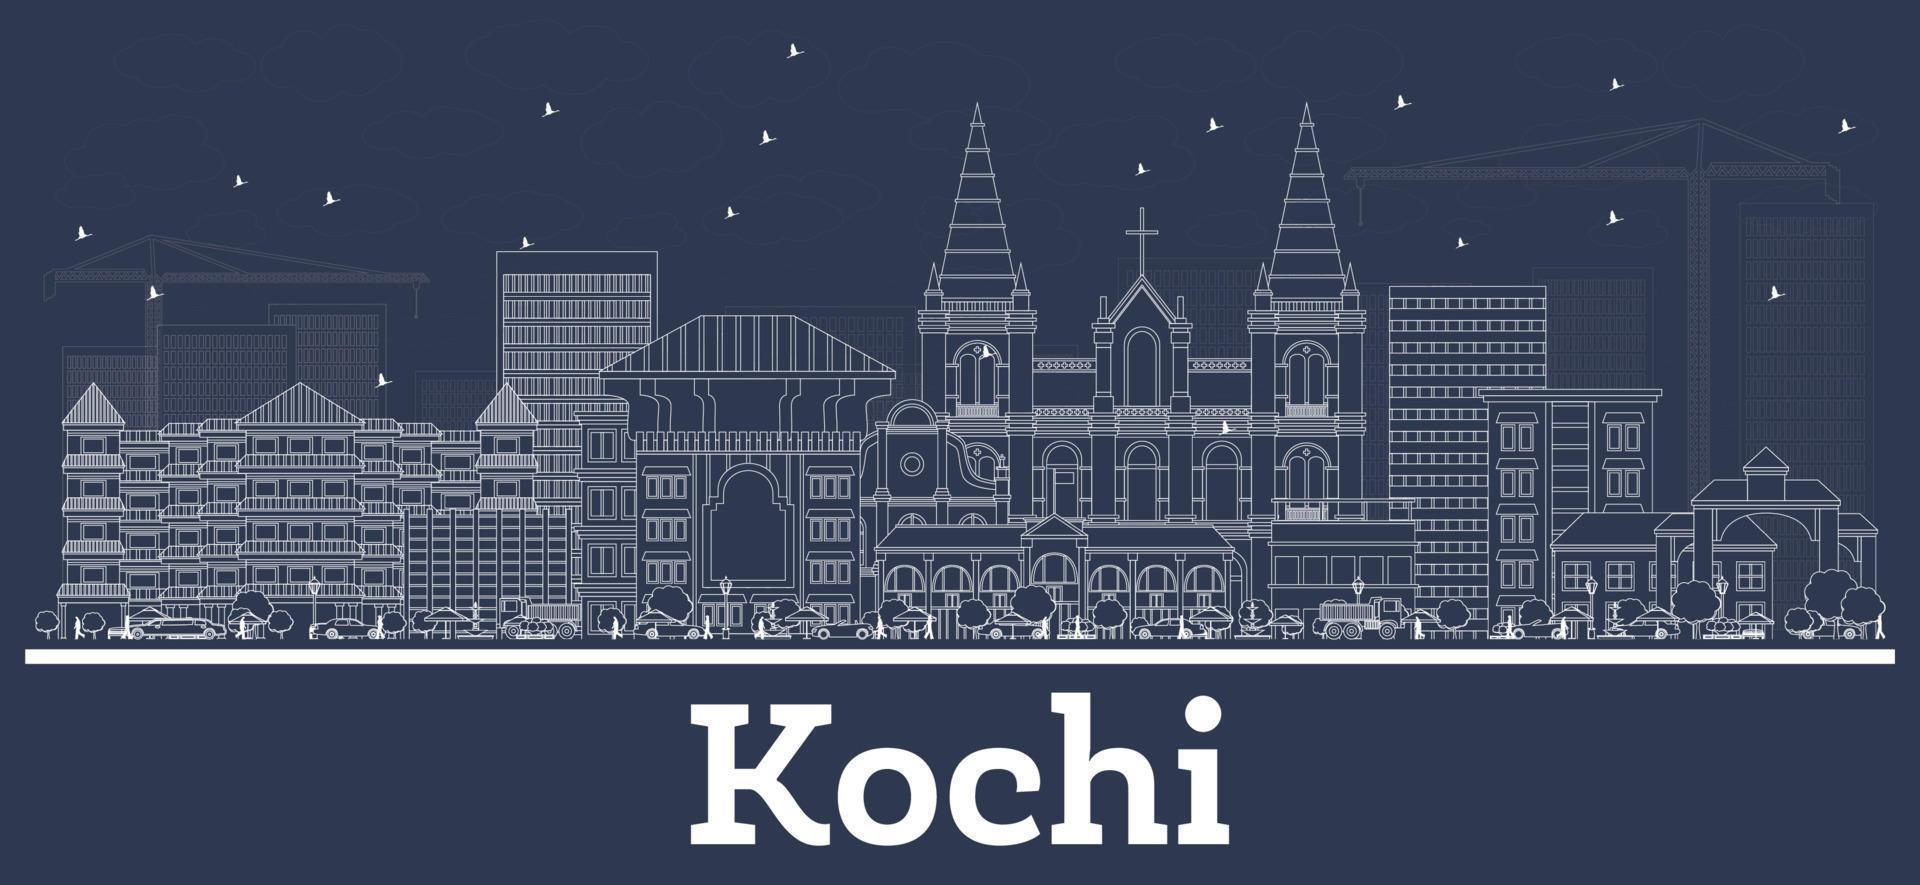 delinear el horizonte de la ciudad de kochi india con edificios blancos. vector